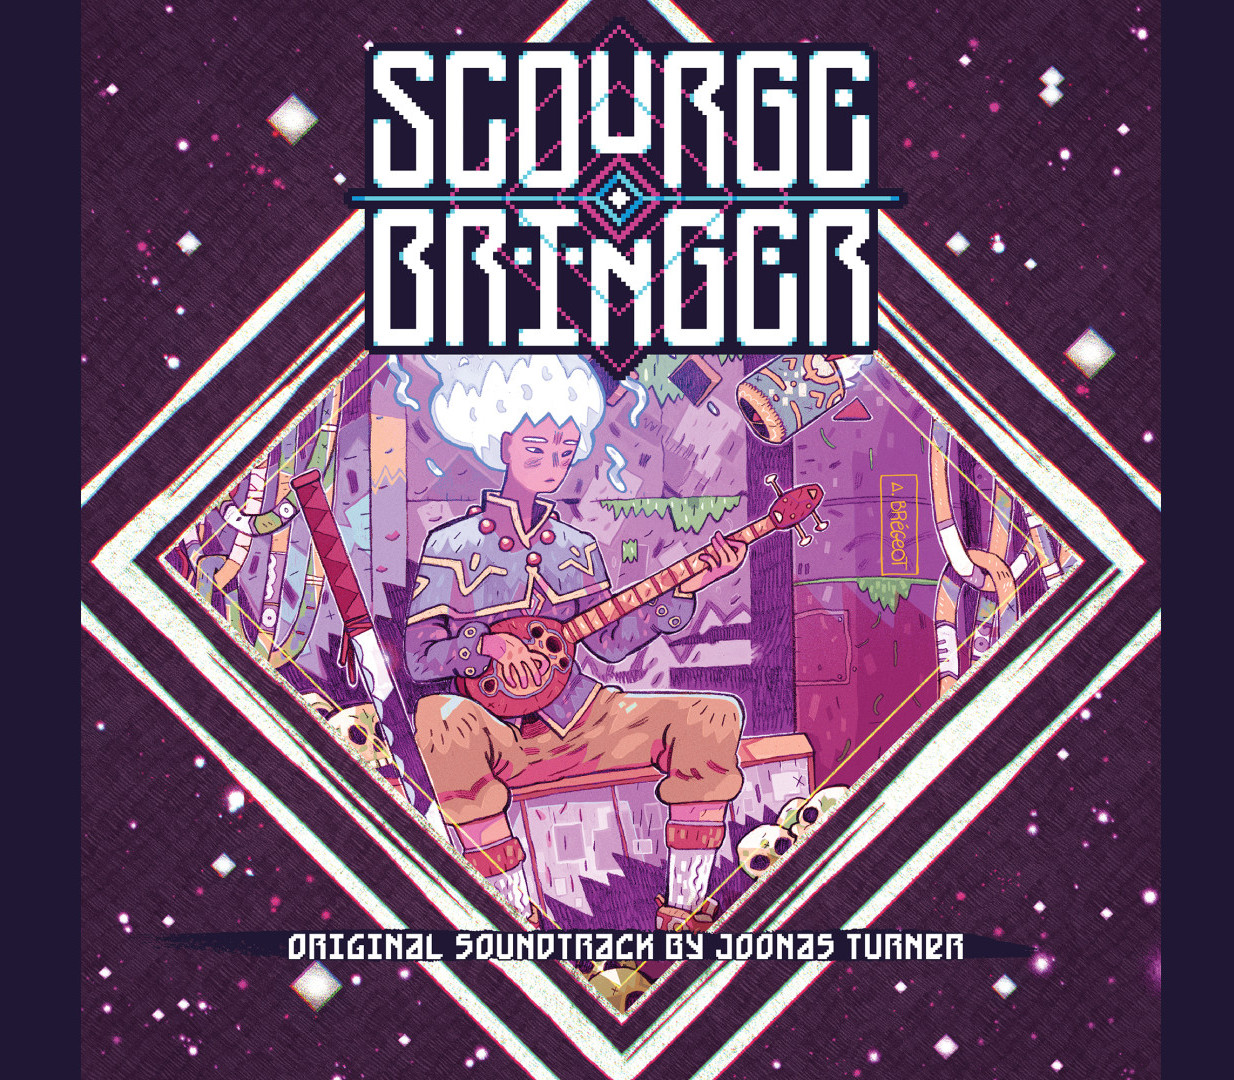 ScourgeBringer - Soundtrack DLC Steam